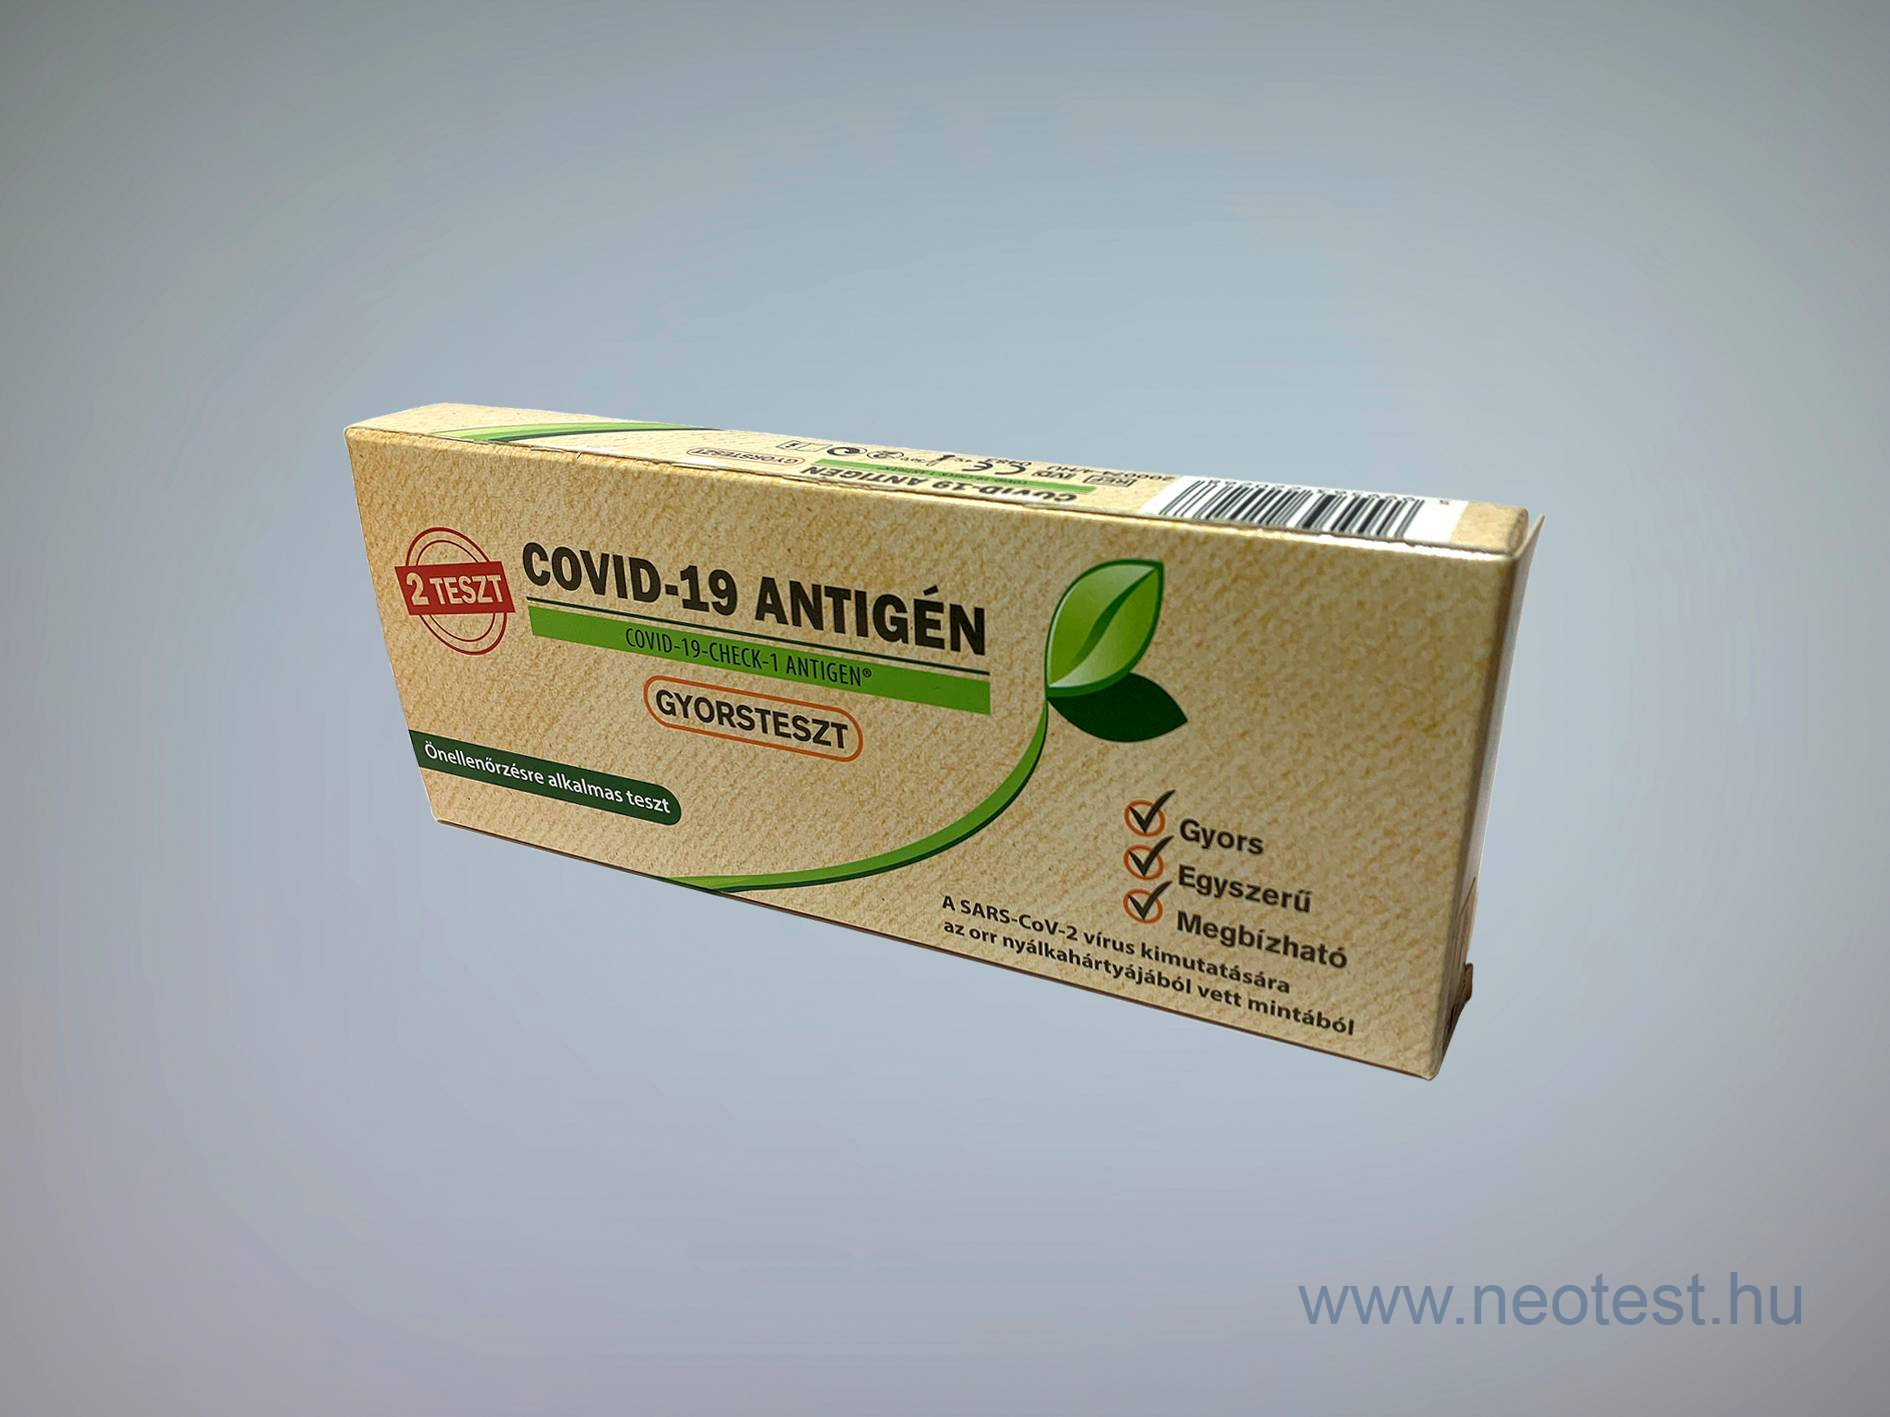 Covid-19 Antigén gyorsteszt önellenőrzésre (2x)